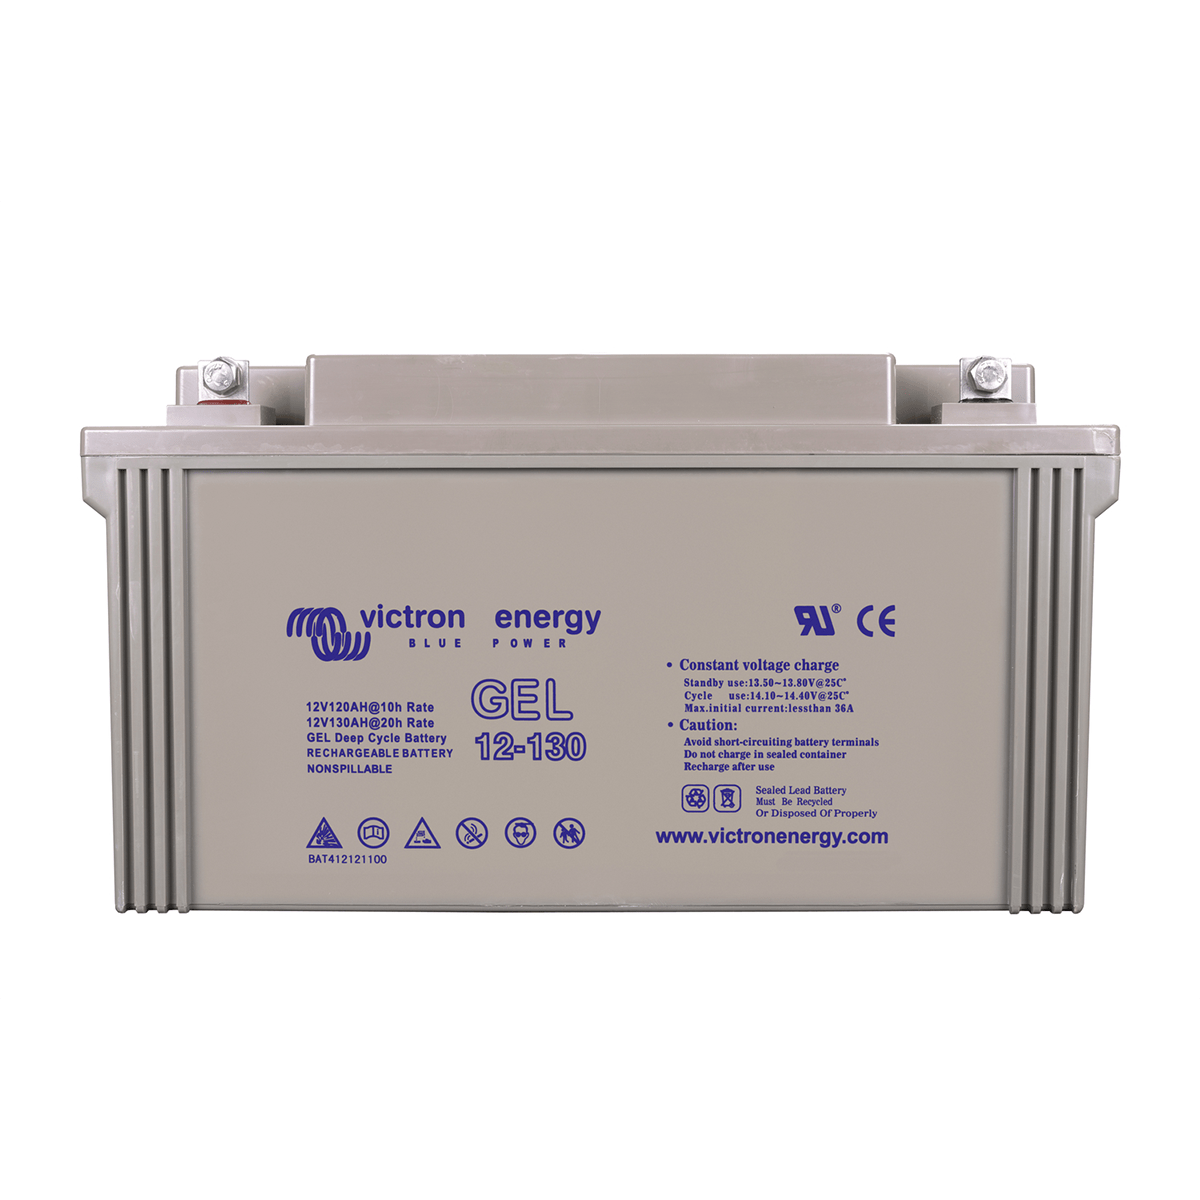 Batterie GEL 12V 130Ah (1560Wh) Victron Energy - Pharos Energies